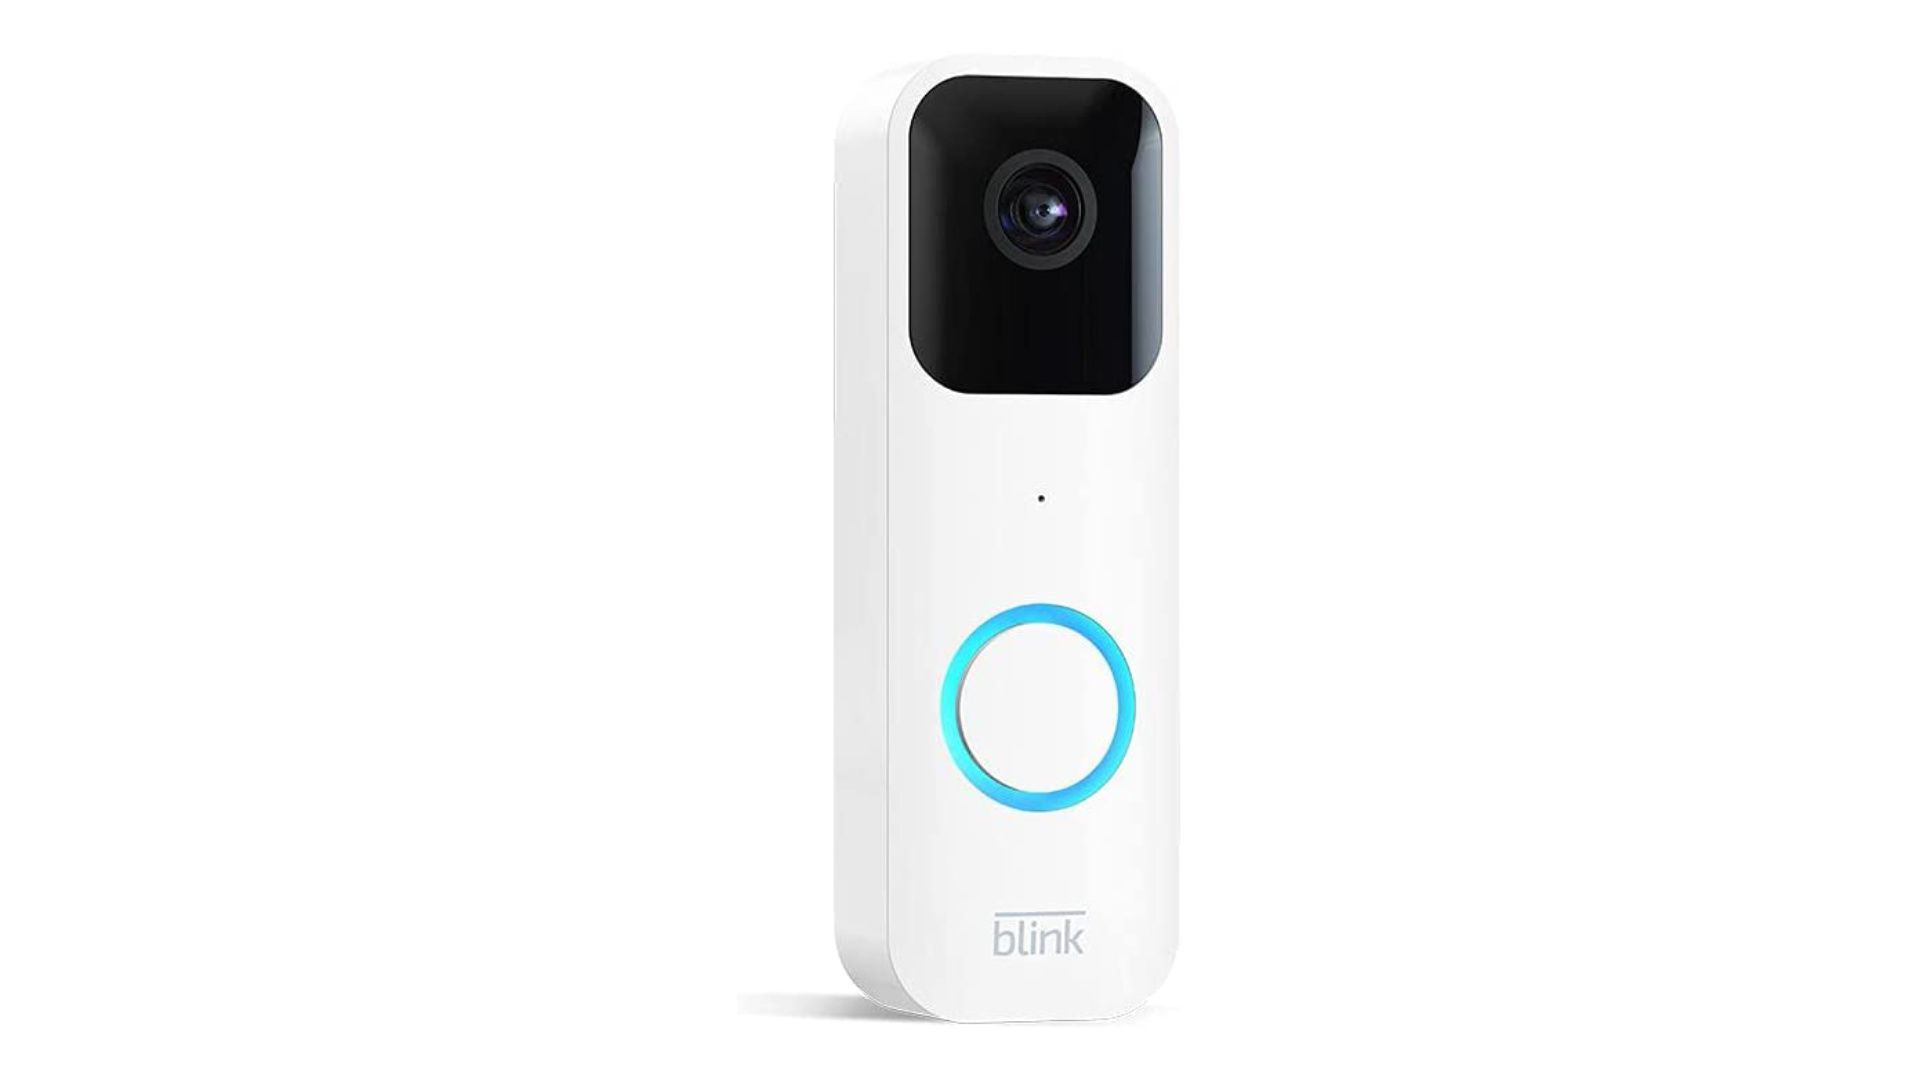 Blink video doorbell